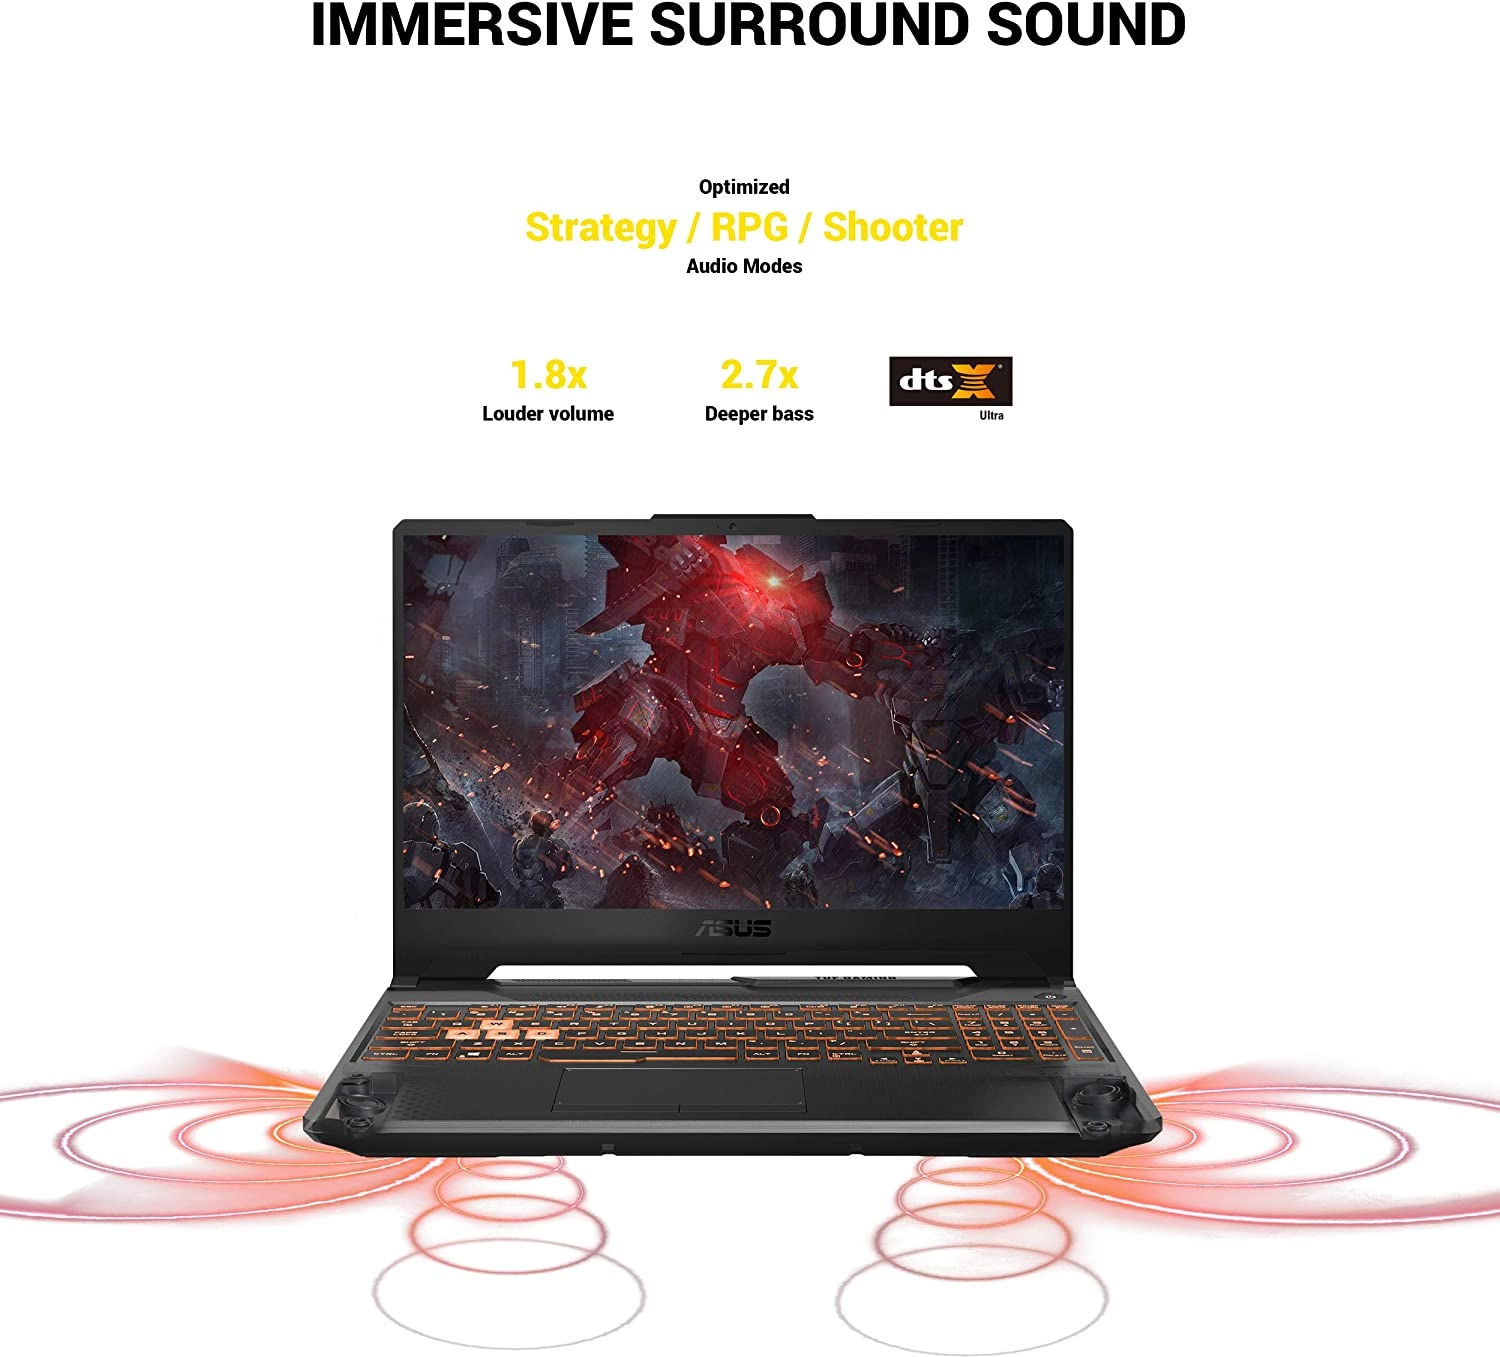 Asus TUF Gaming A15 laptop image